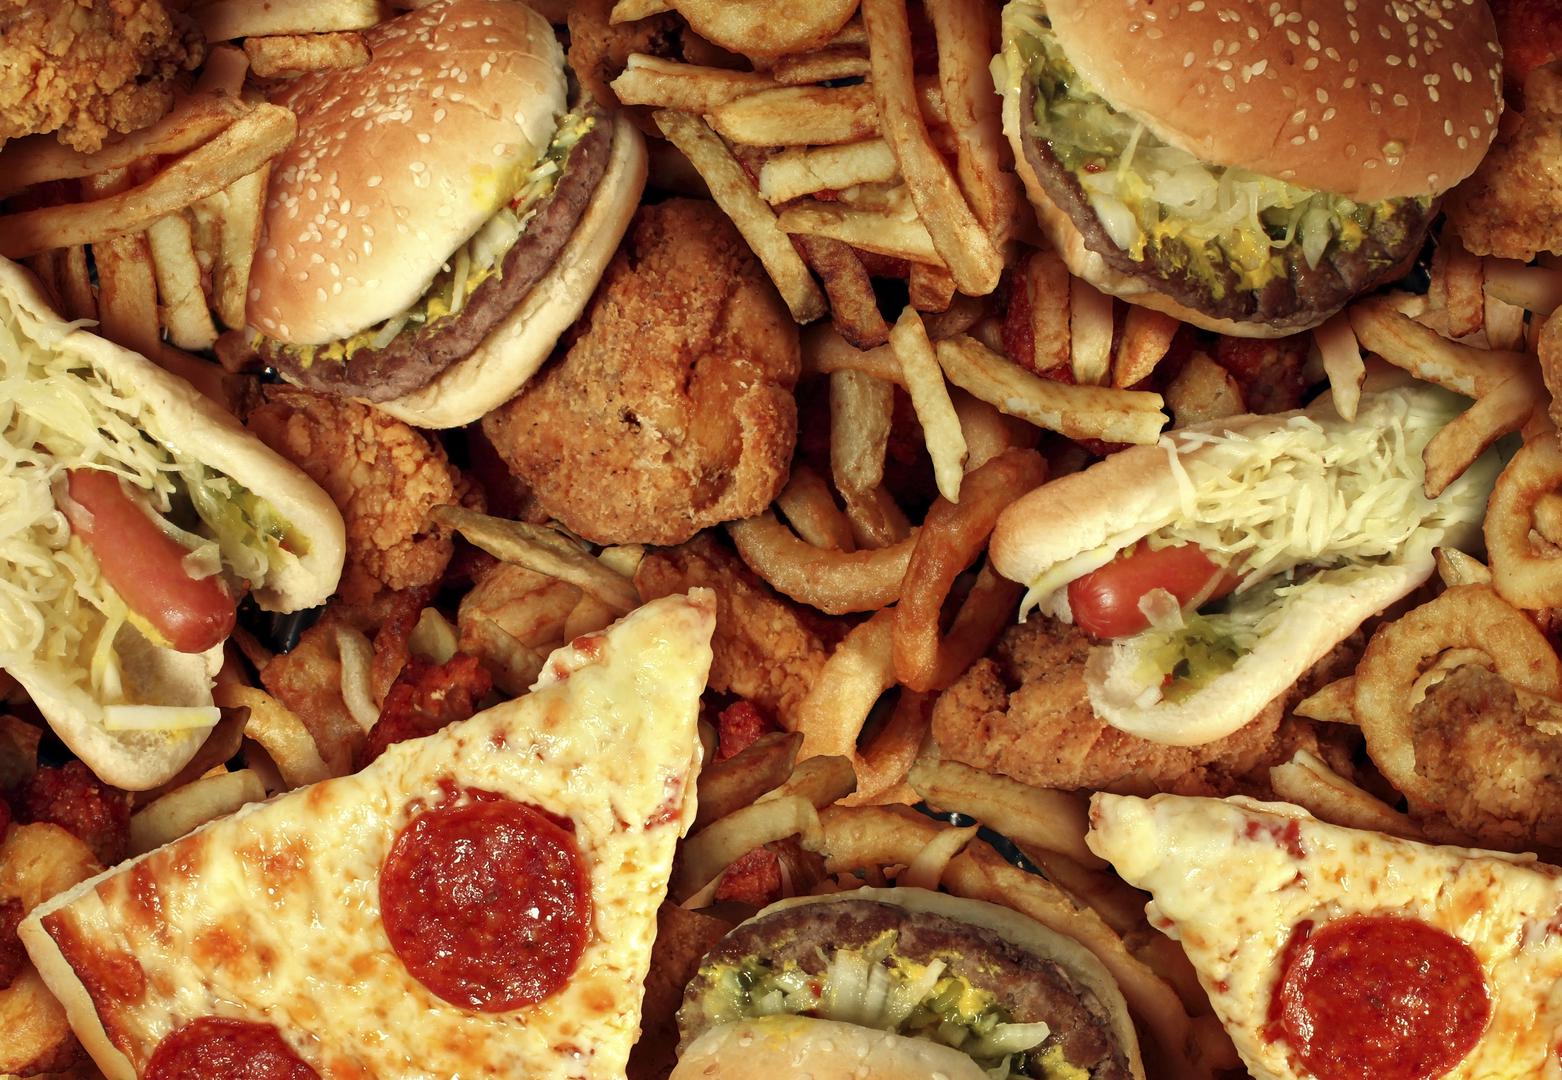 3. 'Mogu jesti što hoću sve dok vježbam' - Ovo je česta zabluda. Upravo zdrava hrana komplementira vježbanju. Nakon tjelovježbe, posegnite za bogatim tanjurom mesa i povrća, ali nikako za hamburgerom i krumpirićima!